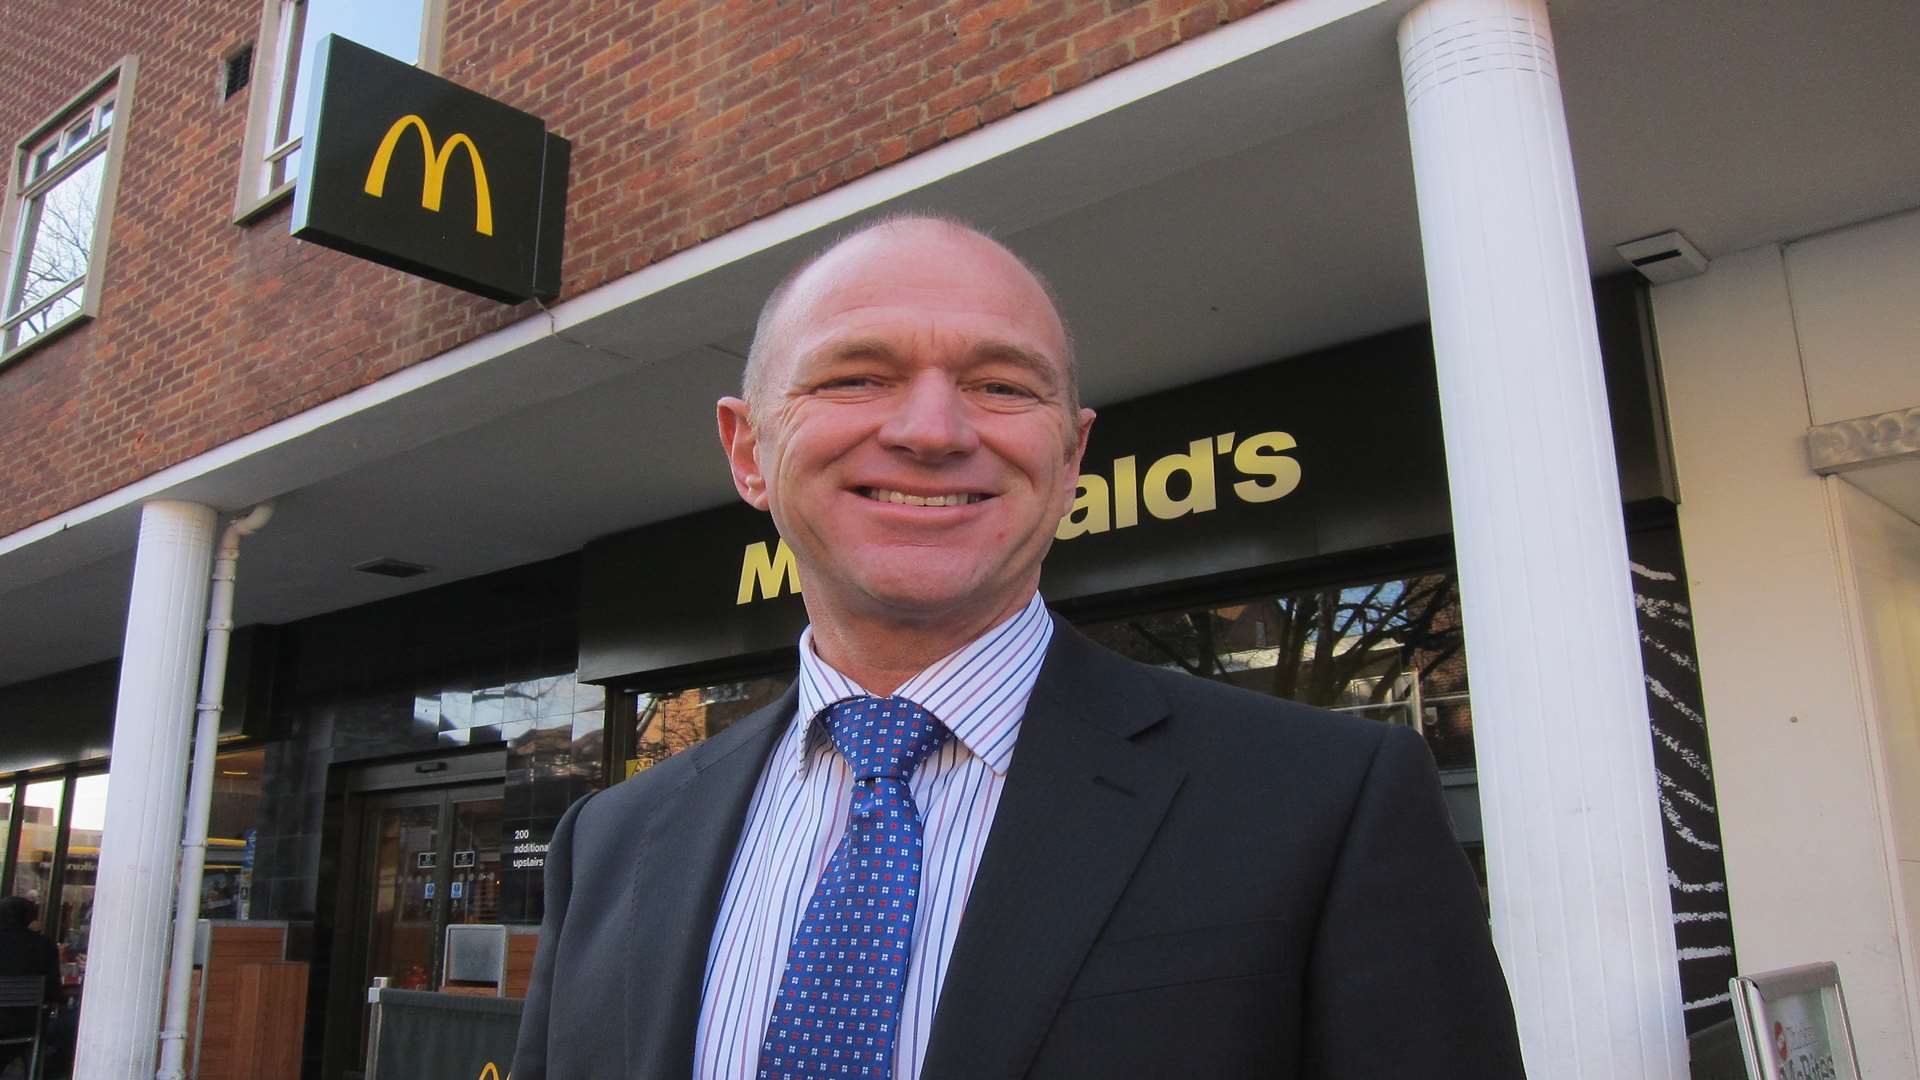 Canterbury McDonald's franchisee Paul Crocker